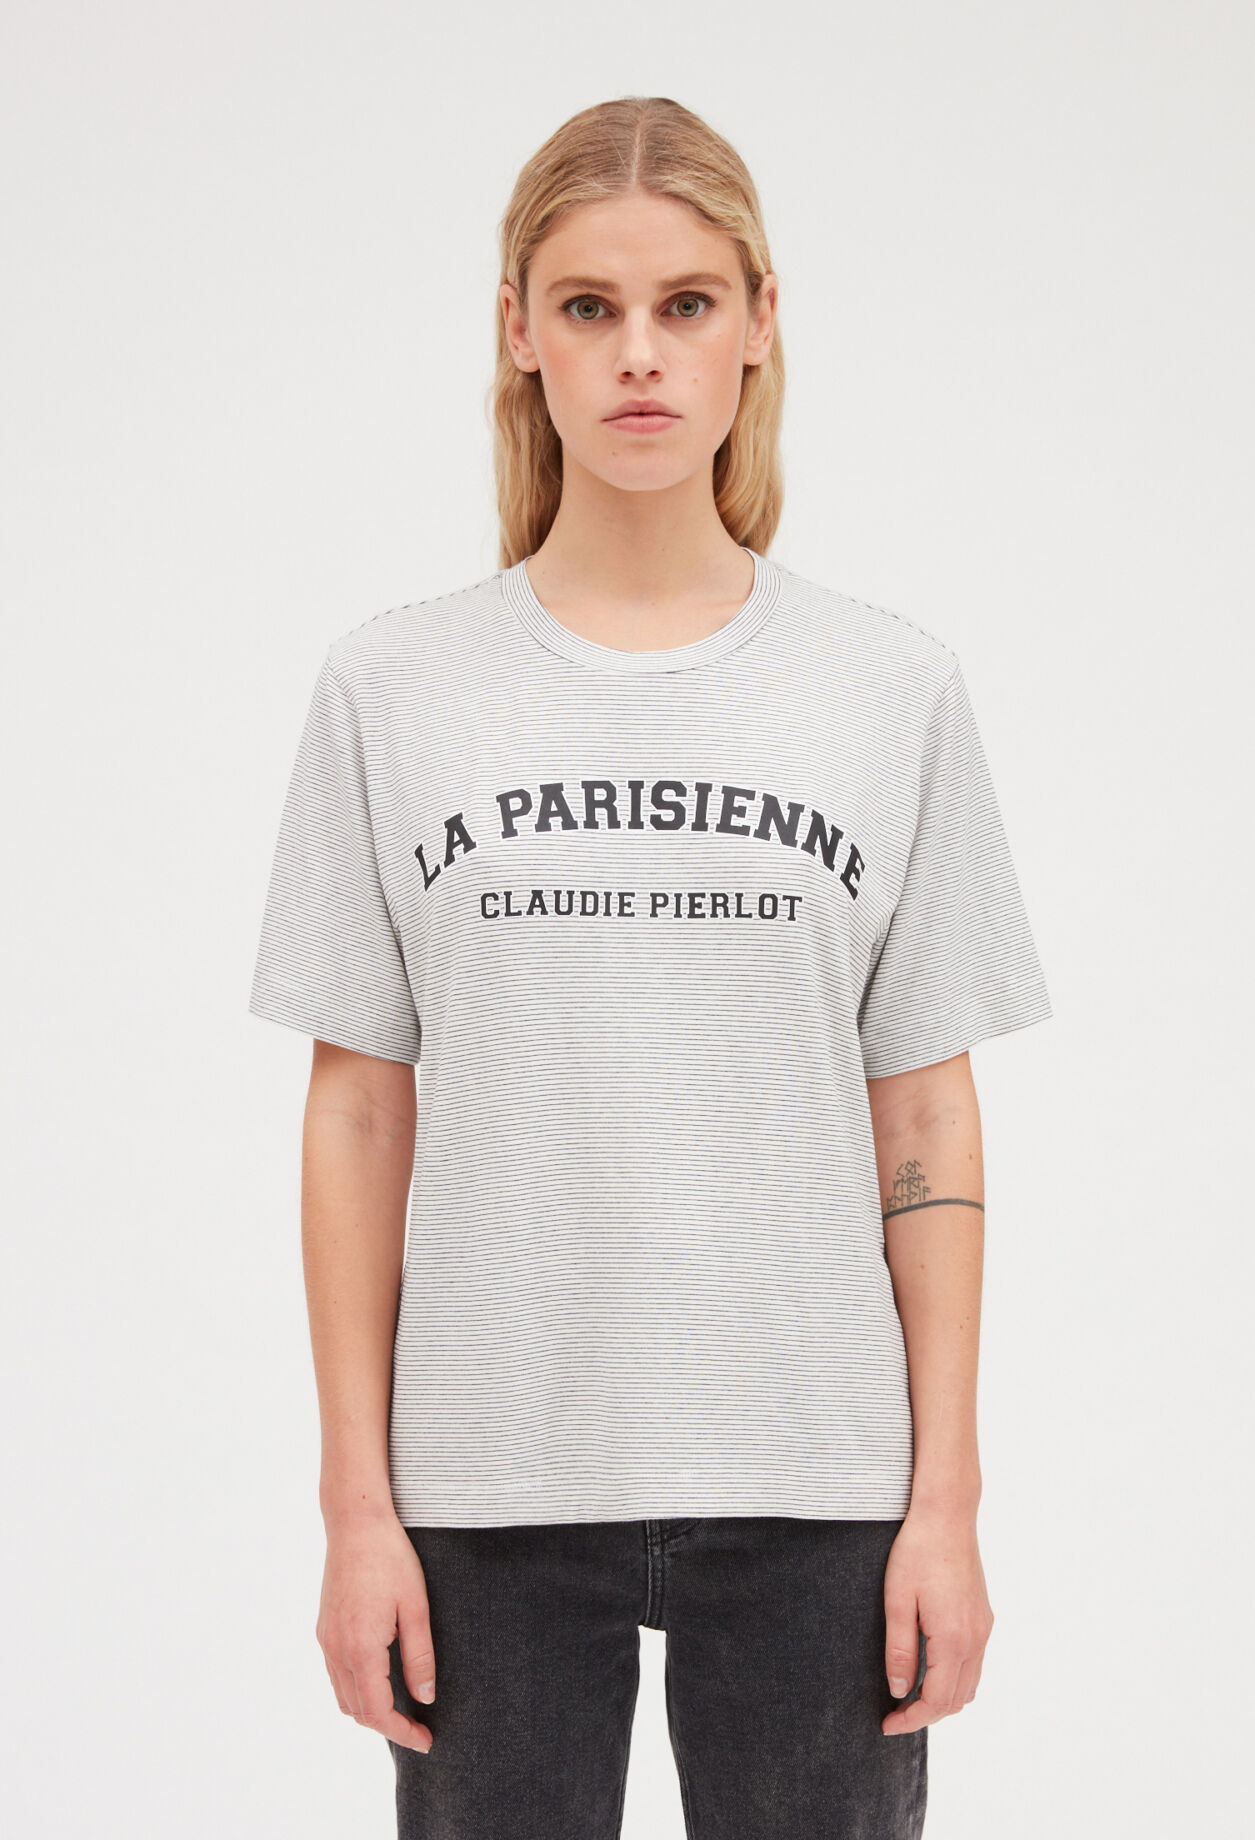 끌로디피에로 Claudiepierlot T-shirt La Parisienne raye,BICOLORE